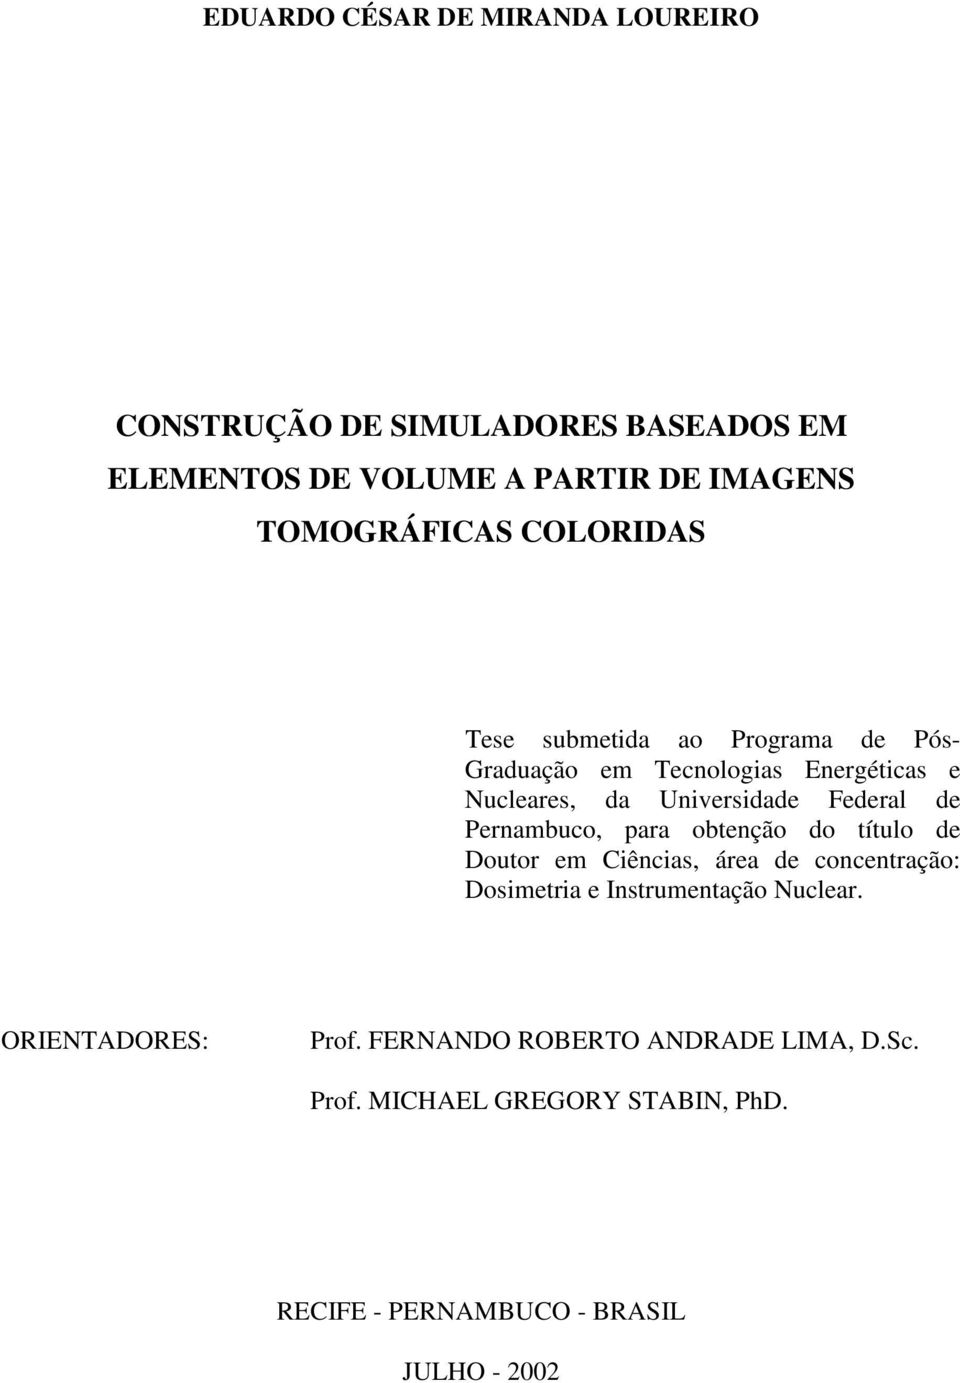 Pernambuco, para obtenção do título de Doutor em Ciências, área de concentração: Dosimetria e Instrumentação Nuclear.